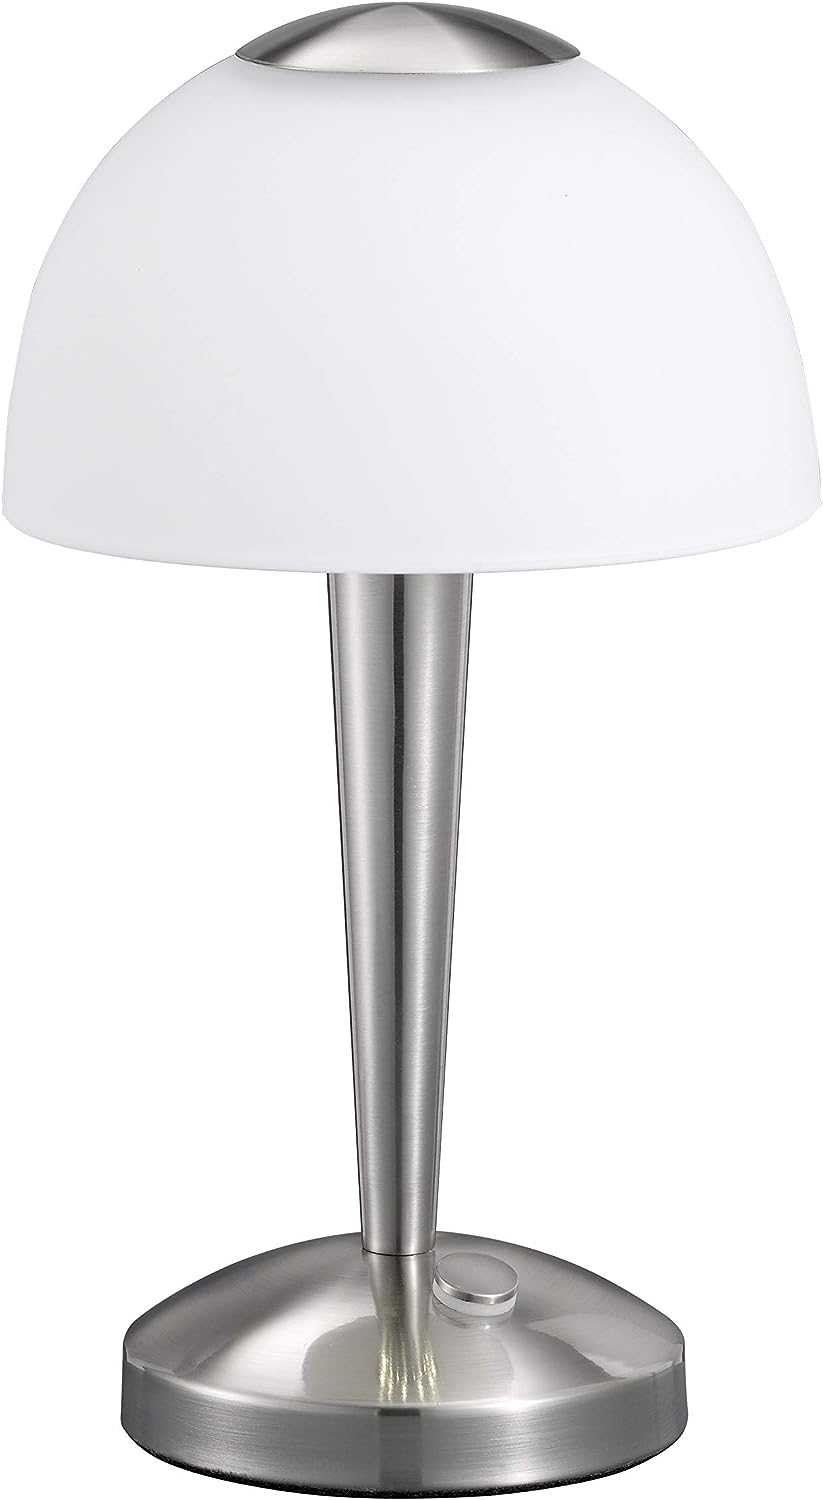 Trio Leuchten LED-Tischleuchte in Nickel matt, Glas weiß satiniert, Touche-Dimmer mit 3 Helligkeitsstufen, inklusive 1 x 5W LED, Höhe - 28 cm 529990107